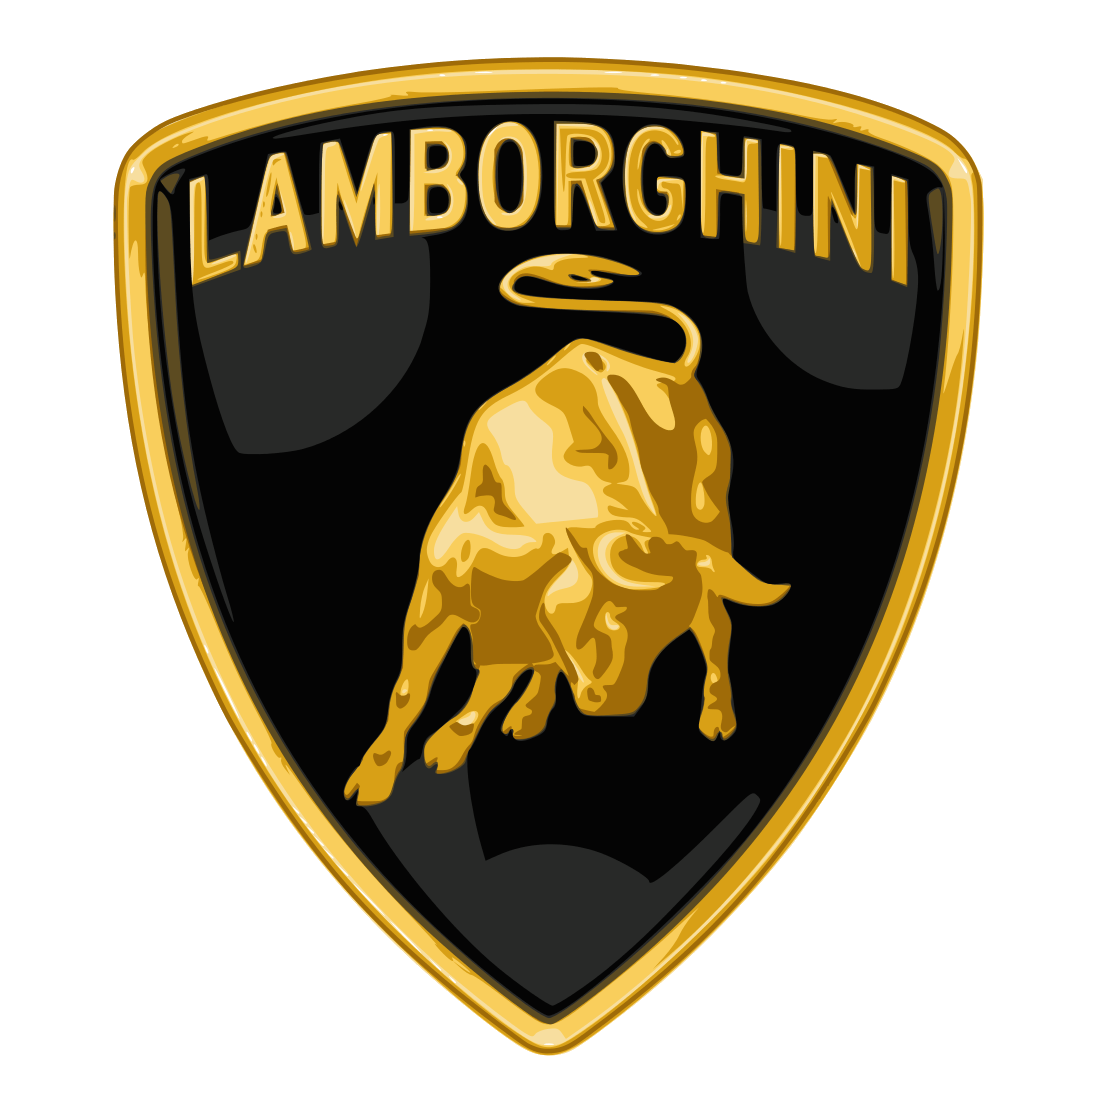 Taurus Car Logo - Lamborghini Logo, Lamborghini Car Symbol Meaning and History | Car ...